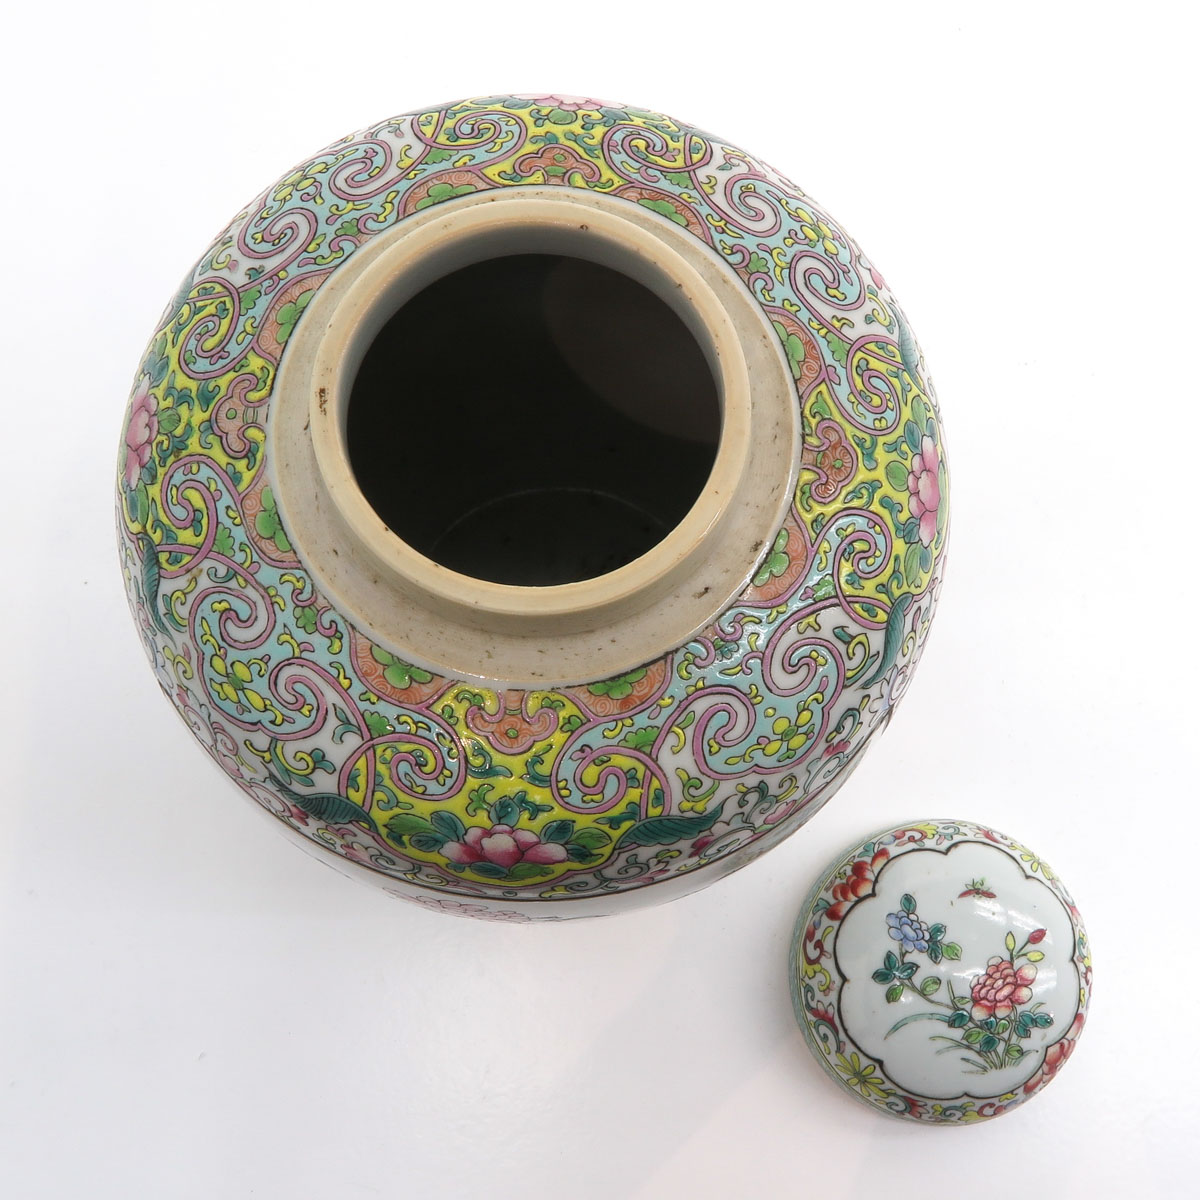 China Porcelain Famille Rose Decor Lidded Jar - Image 5 of 6